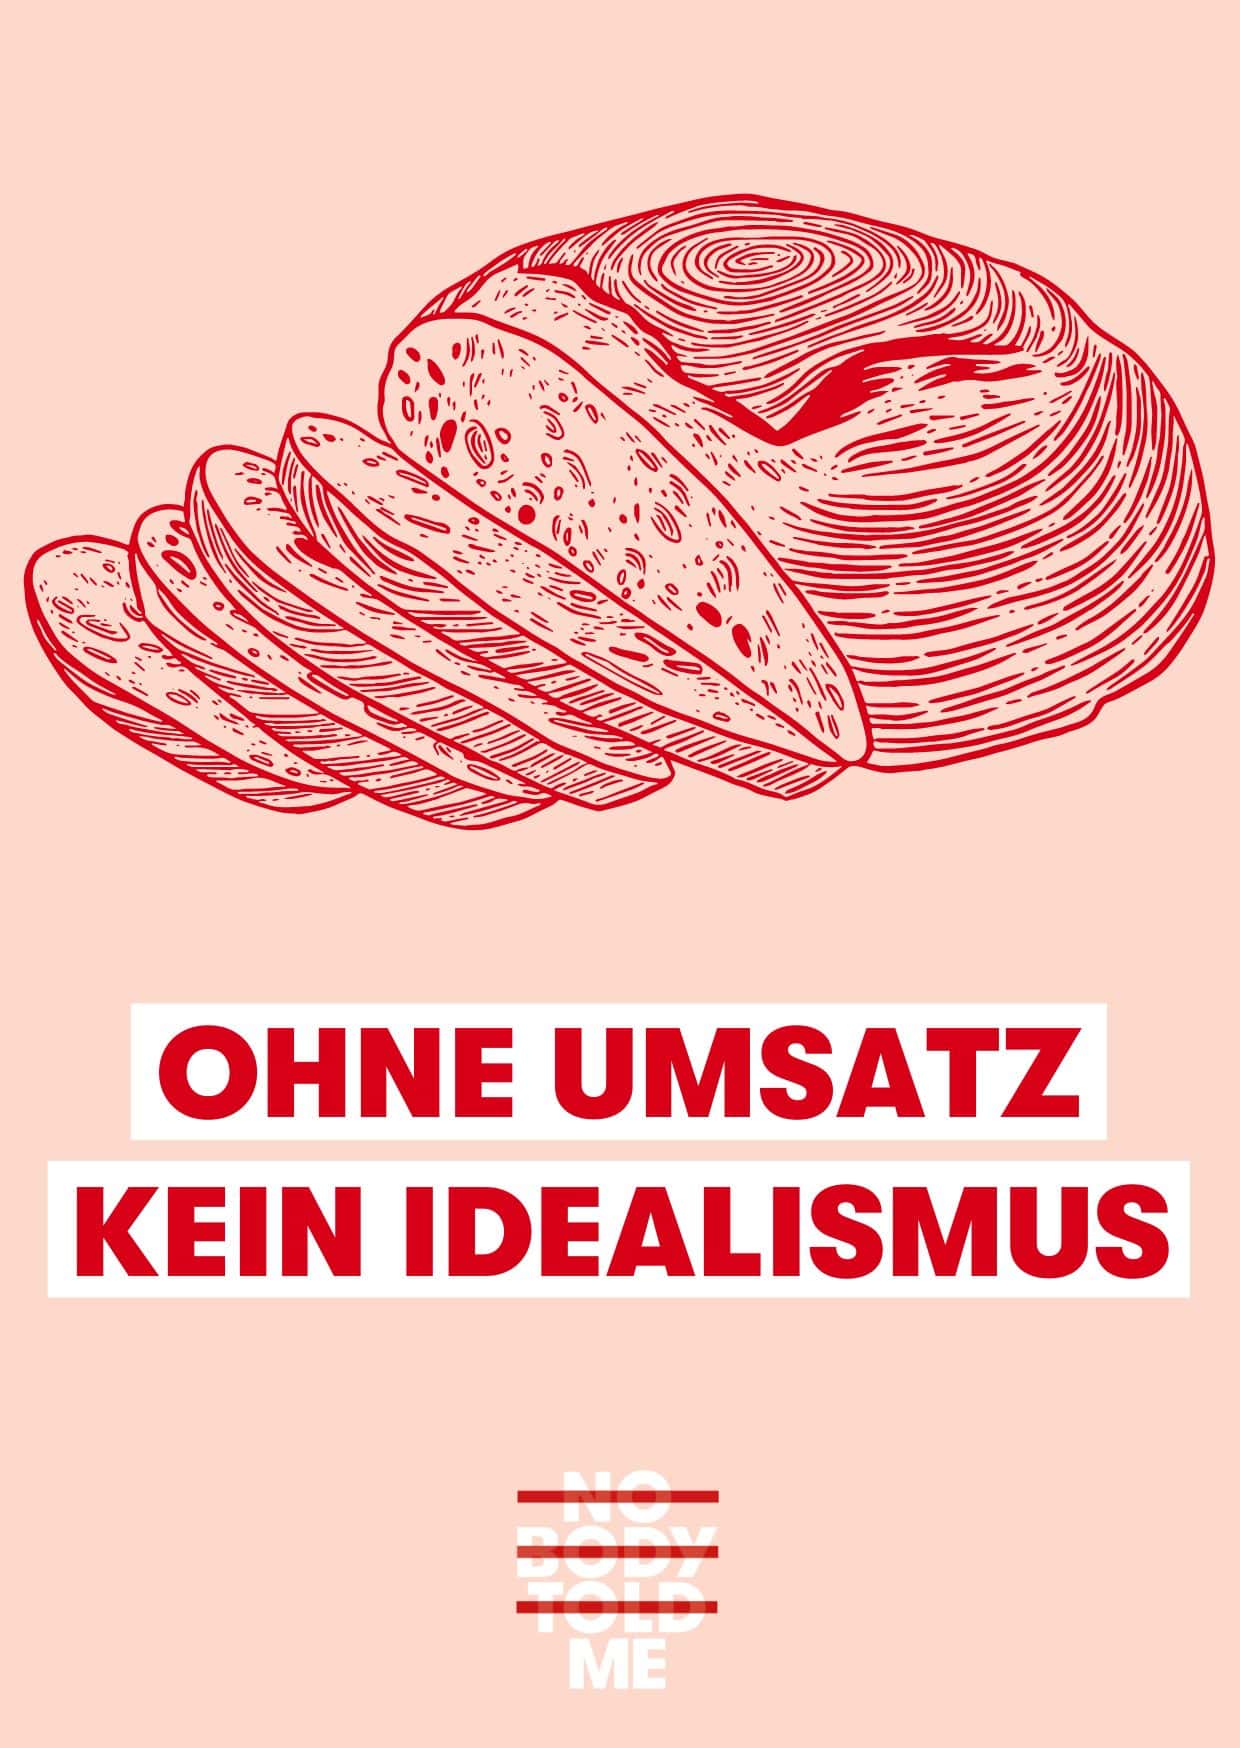 Brot in der Farbe Rot und darunter steht: ohne Umsatz kein Idealismus